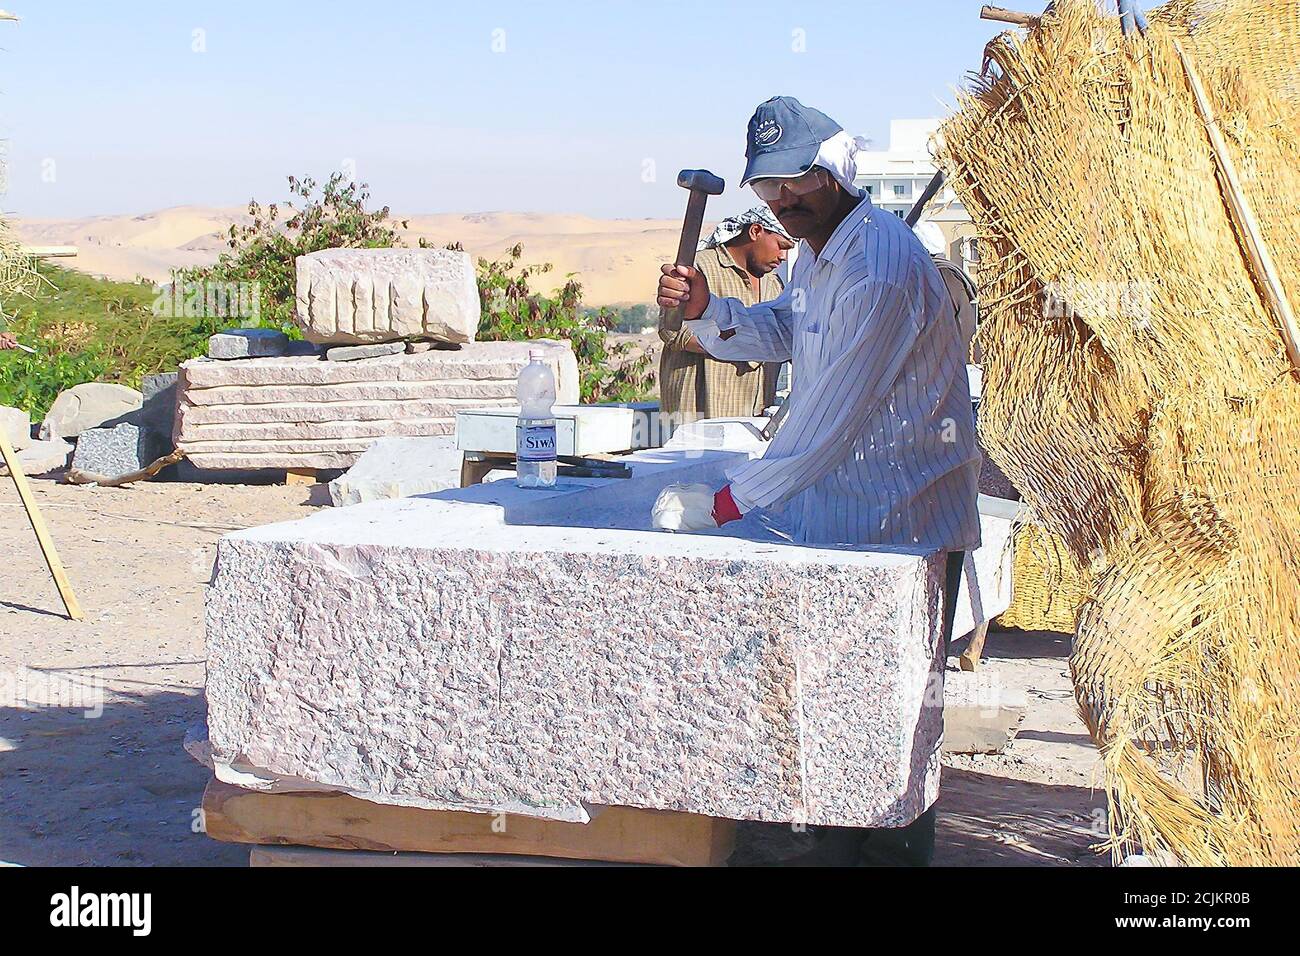 Tagliapietre di granito ad Assuan, preparando un 'simposio internazionale'. Immagine seriale n. 1 Foto Stock